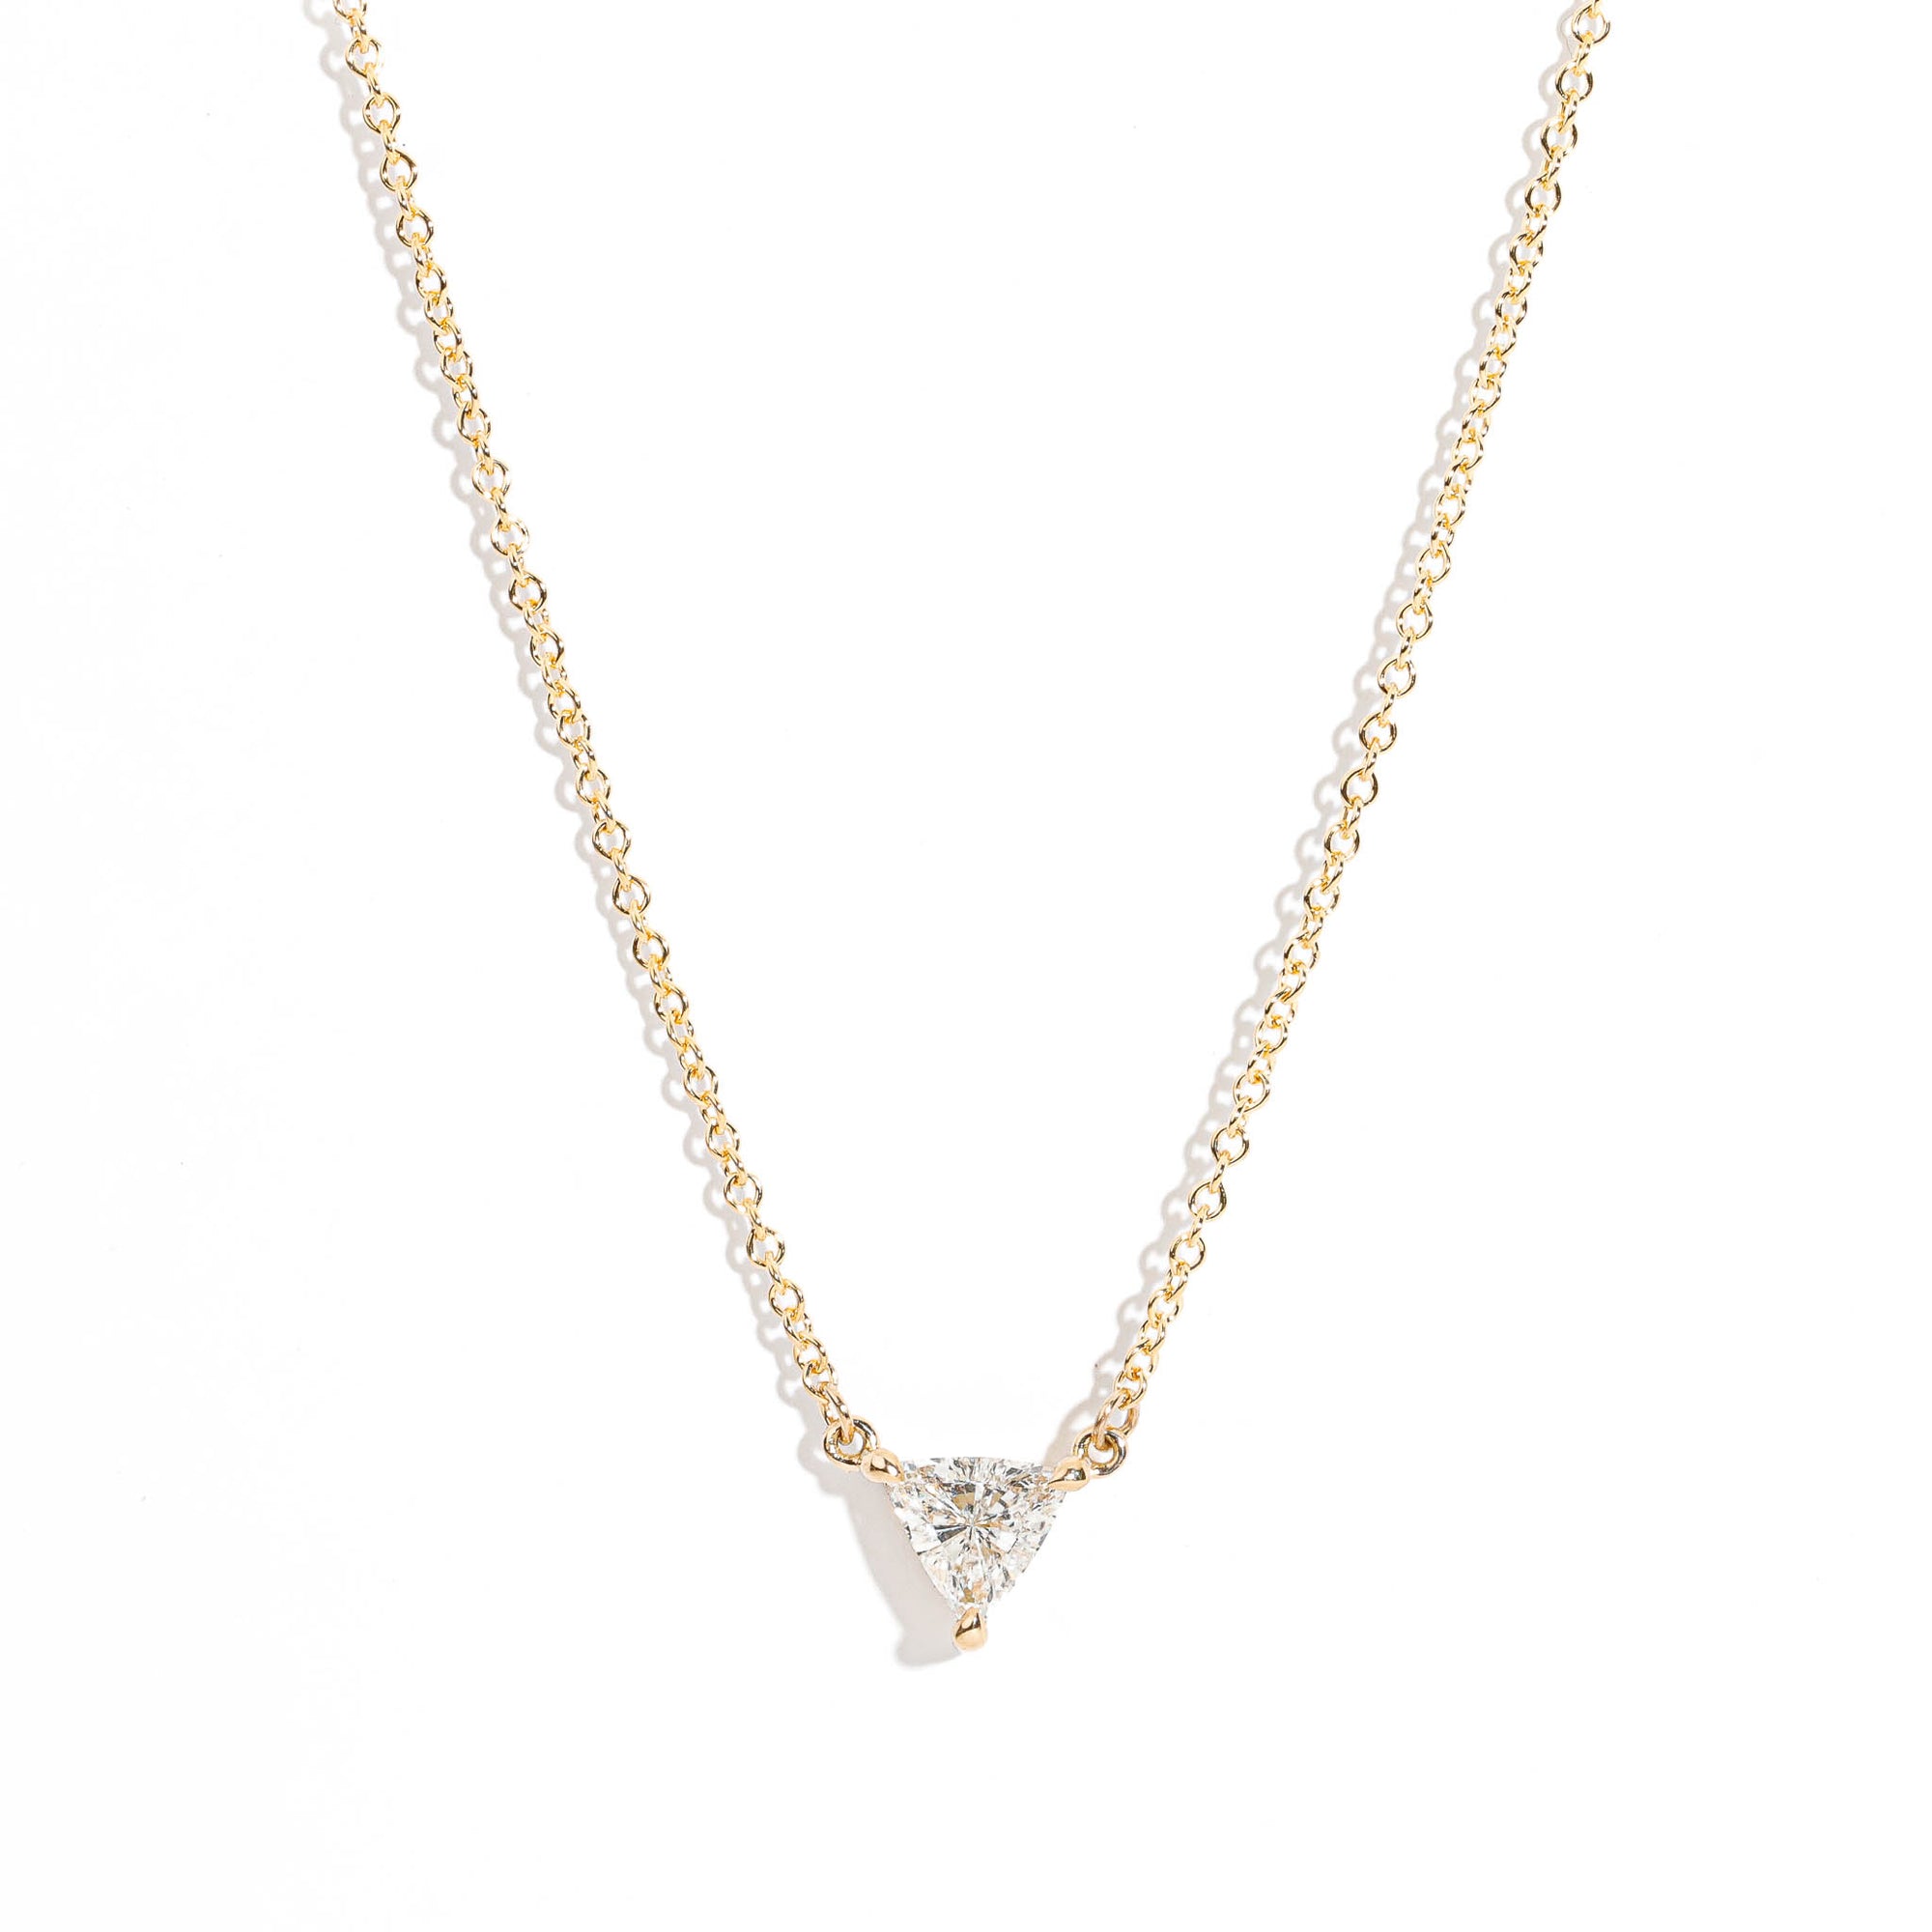 Vivid Diamond Necklace